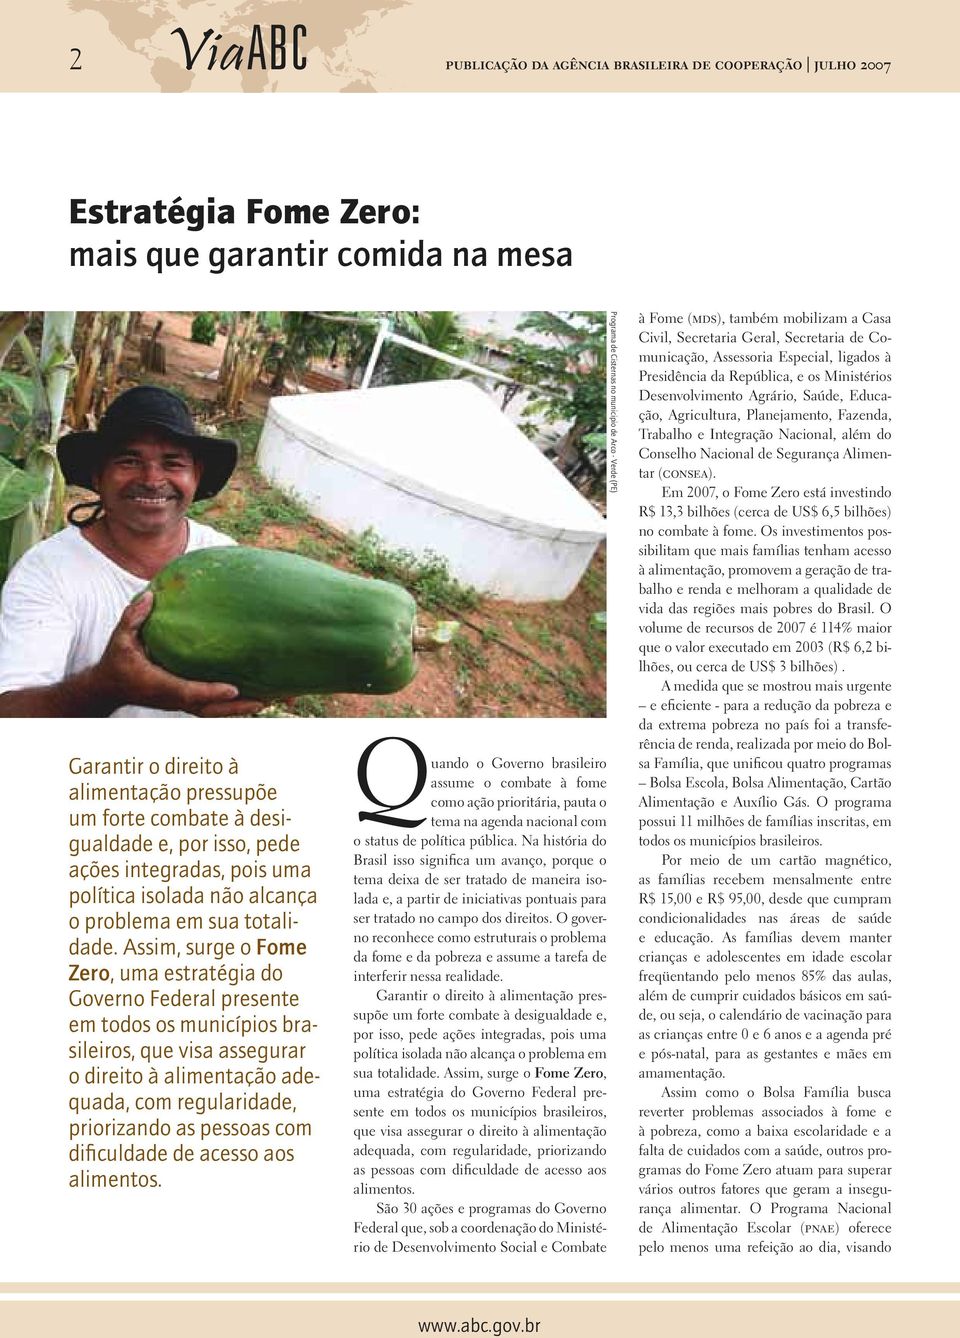 Assim, surge o Fome Zero, uma estratégia do Governo Federal presente em todos os municípios brasileiros, que visa assegurar o direito à alimentação adequada, com regularidade, priorizando as pessoas